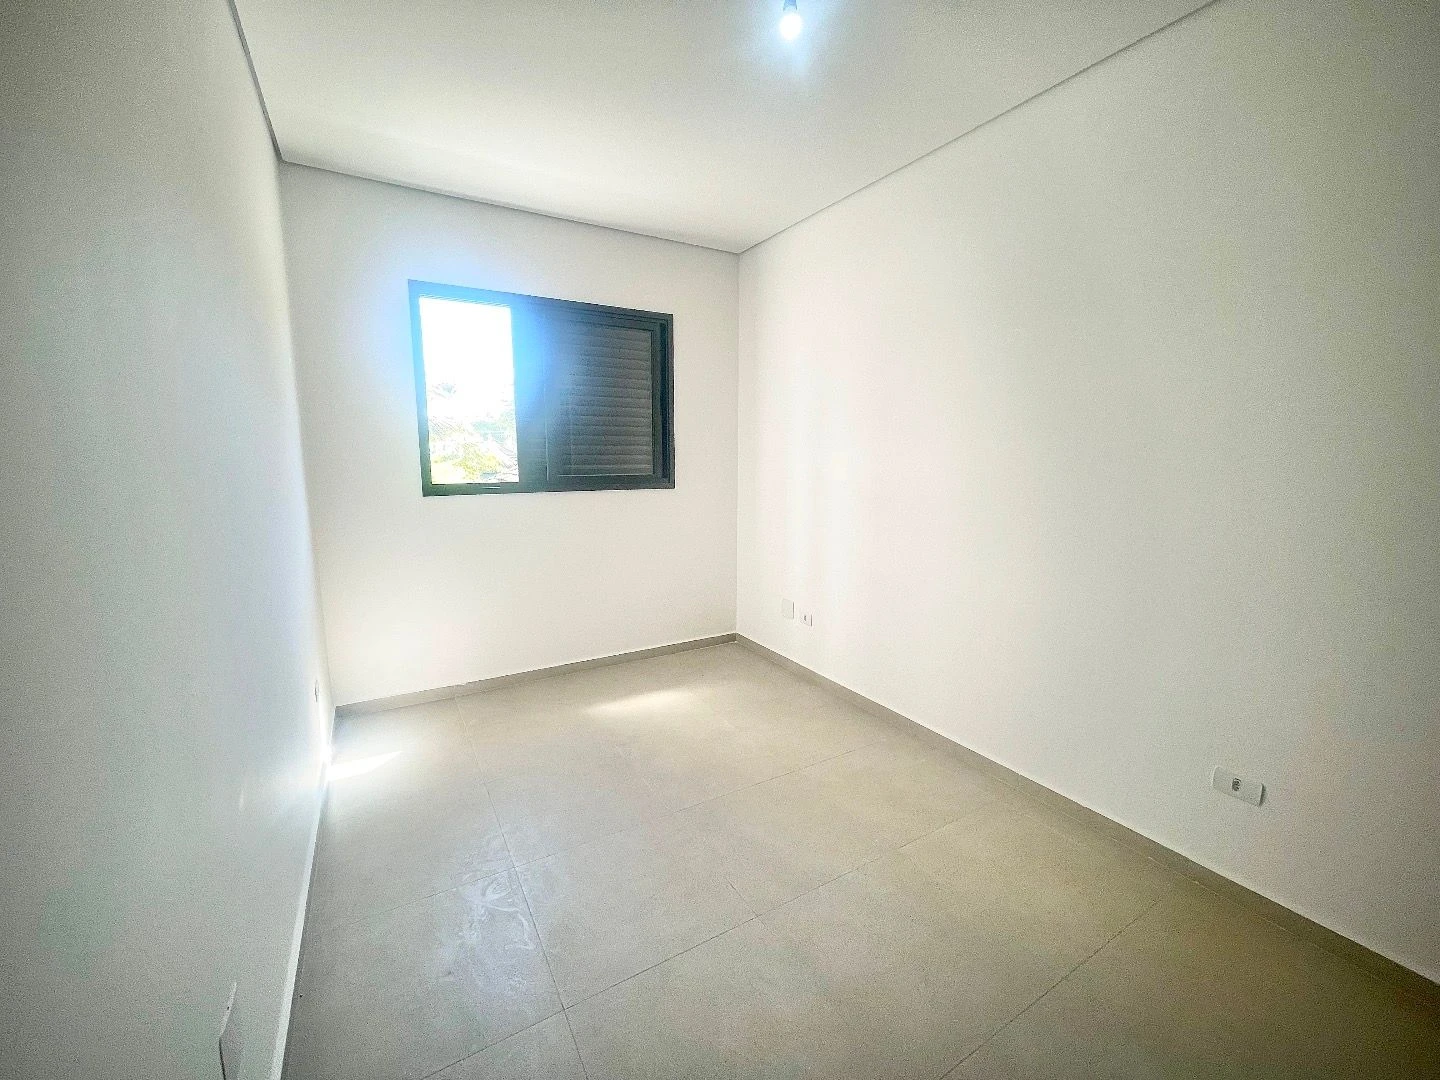 Sobrado à venda, 78 m² por R$ 760.000,00 - Aparecida - Santos/SP